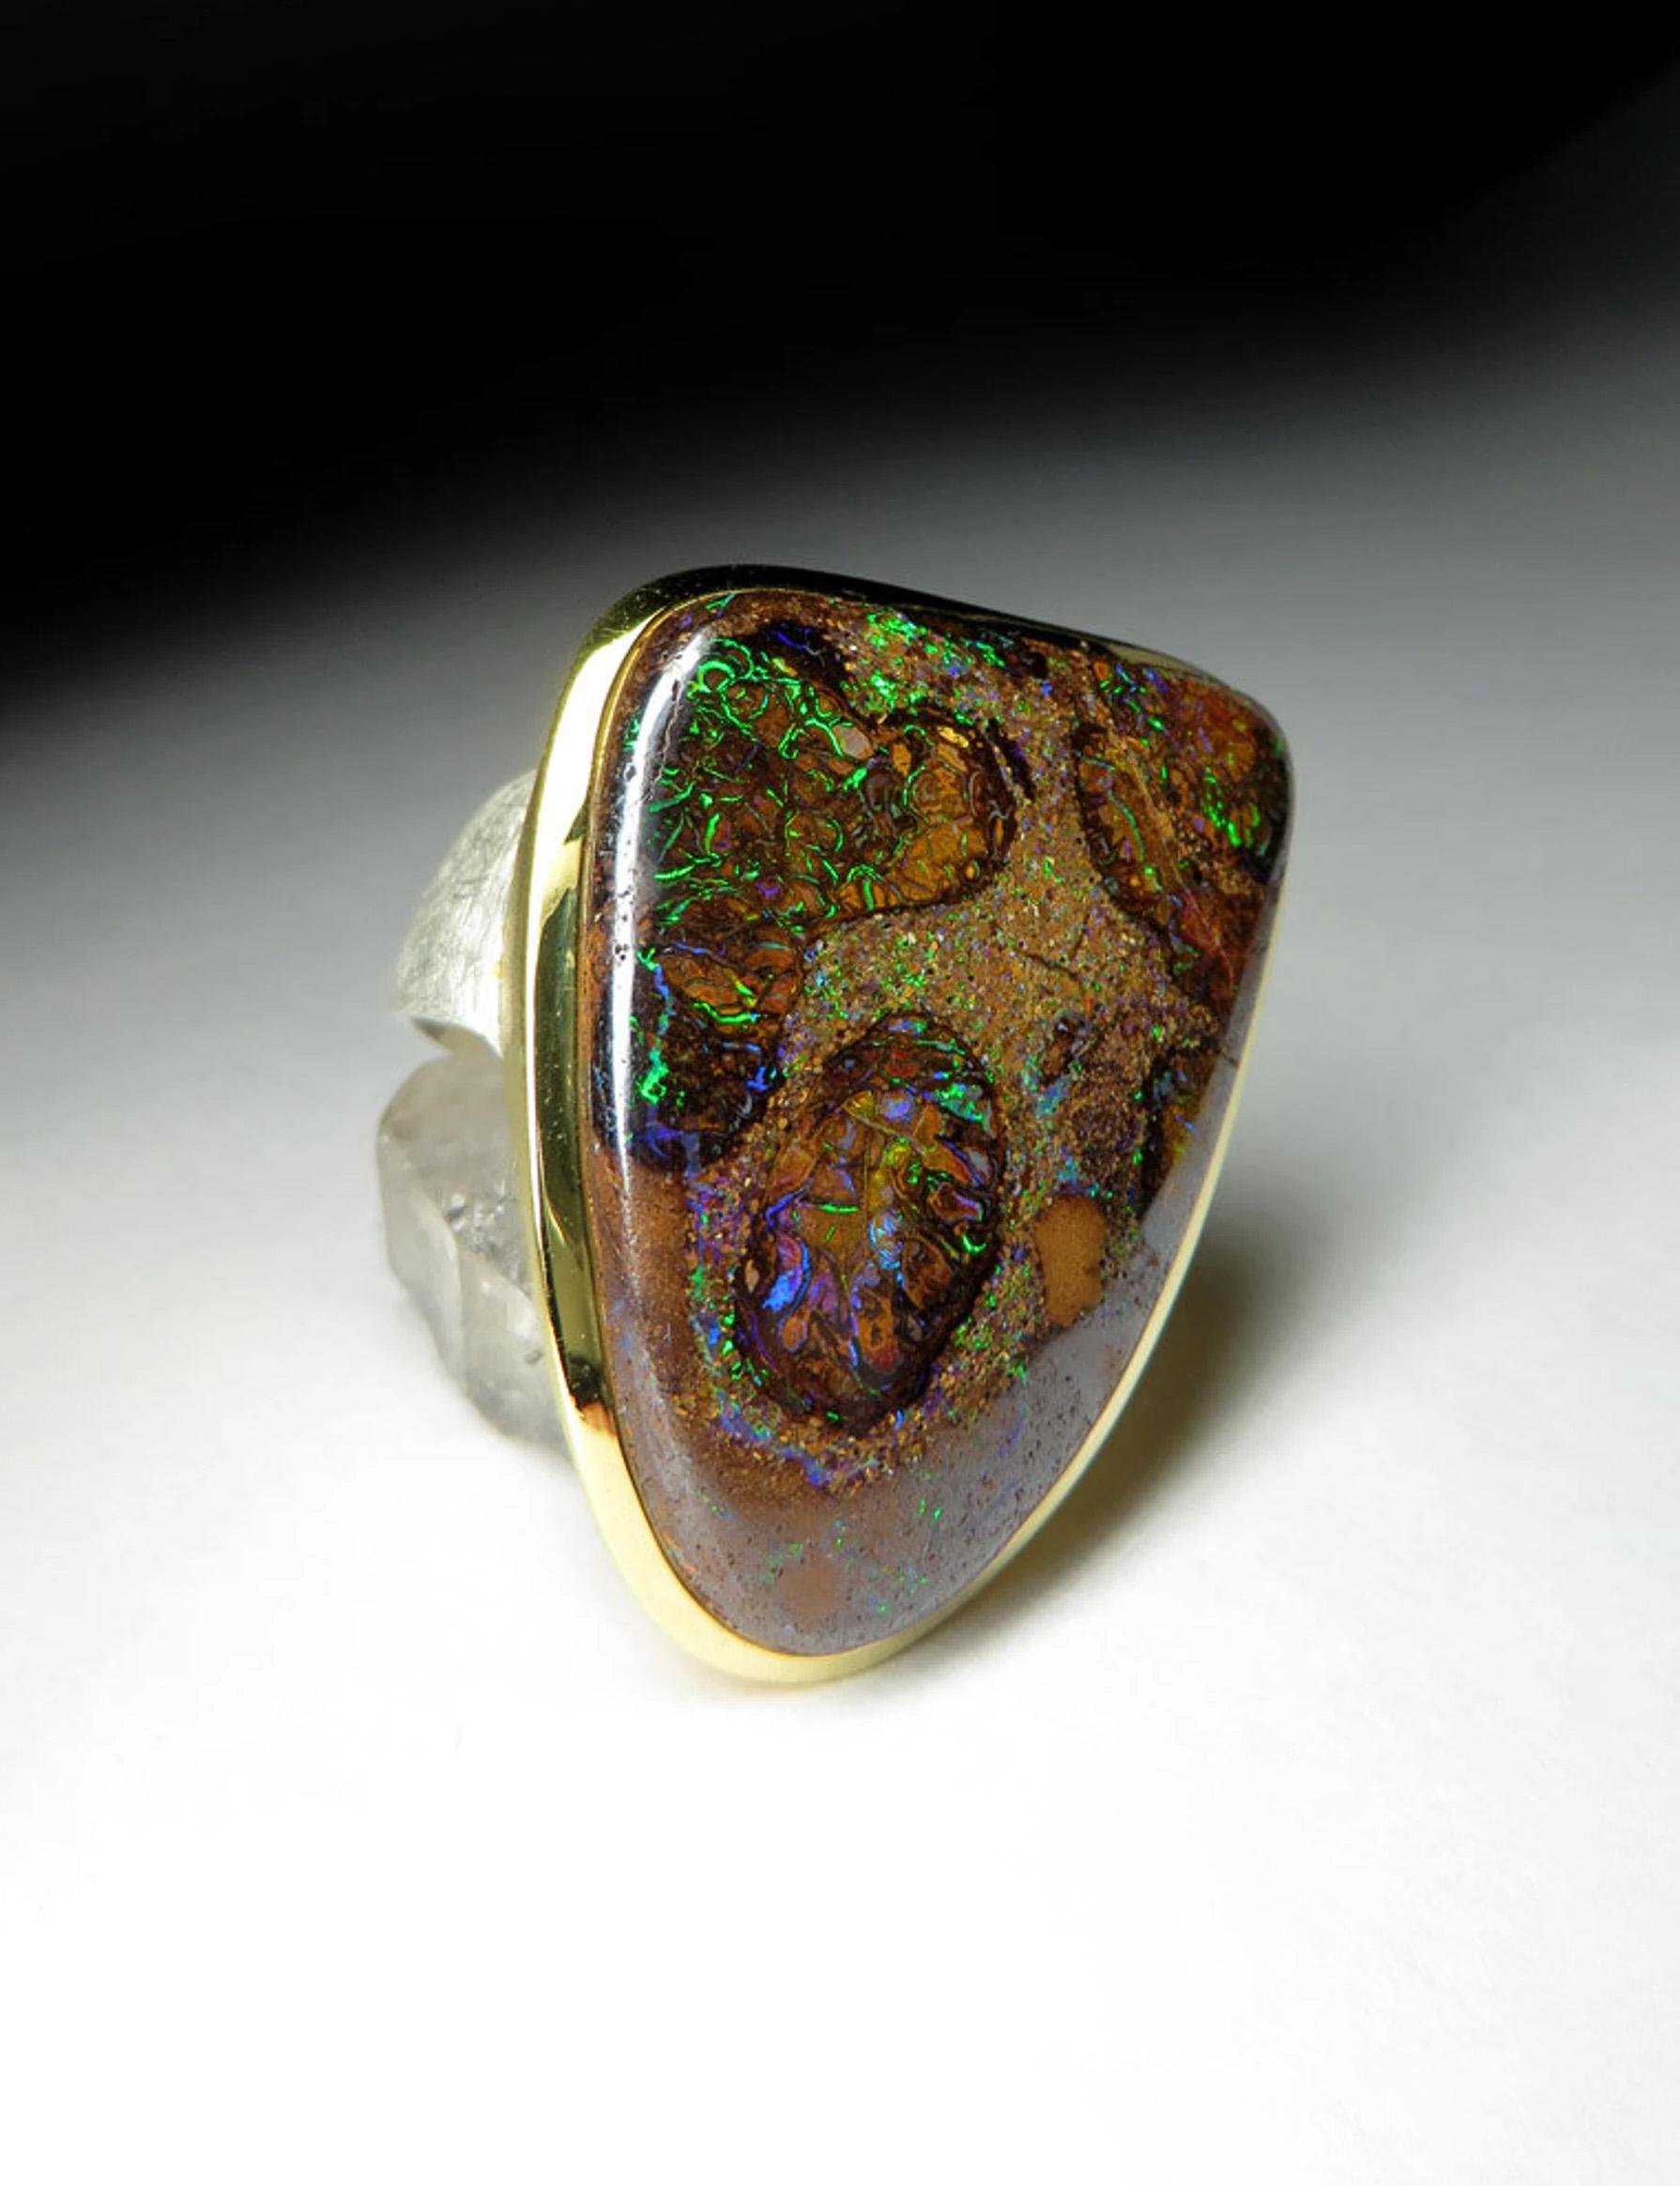 Großer 18K vergoldeter Silberring mit natürlichem Boulder Opal 
Herkunft der Edelsteine - Australien
Ringgewicht - 26.82 Gramm
Ringgröße - 10.25 US
Größe des Edelsteins - 0.28 х 0.98 x 1.38 in / 7 х 25 х 35 mm